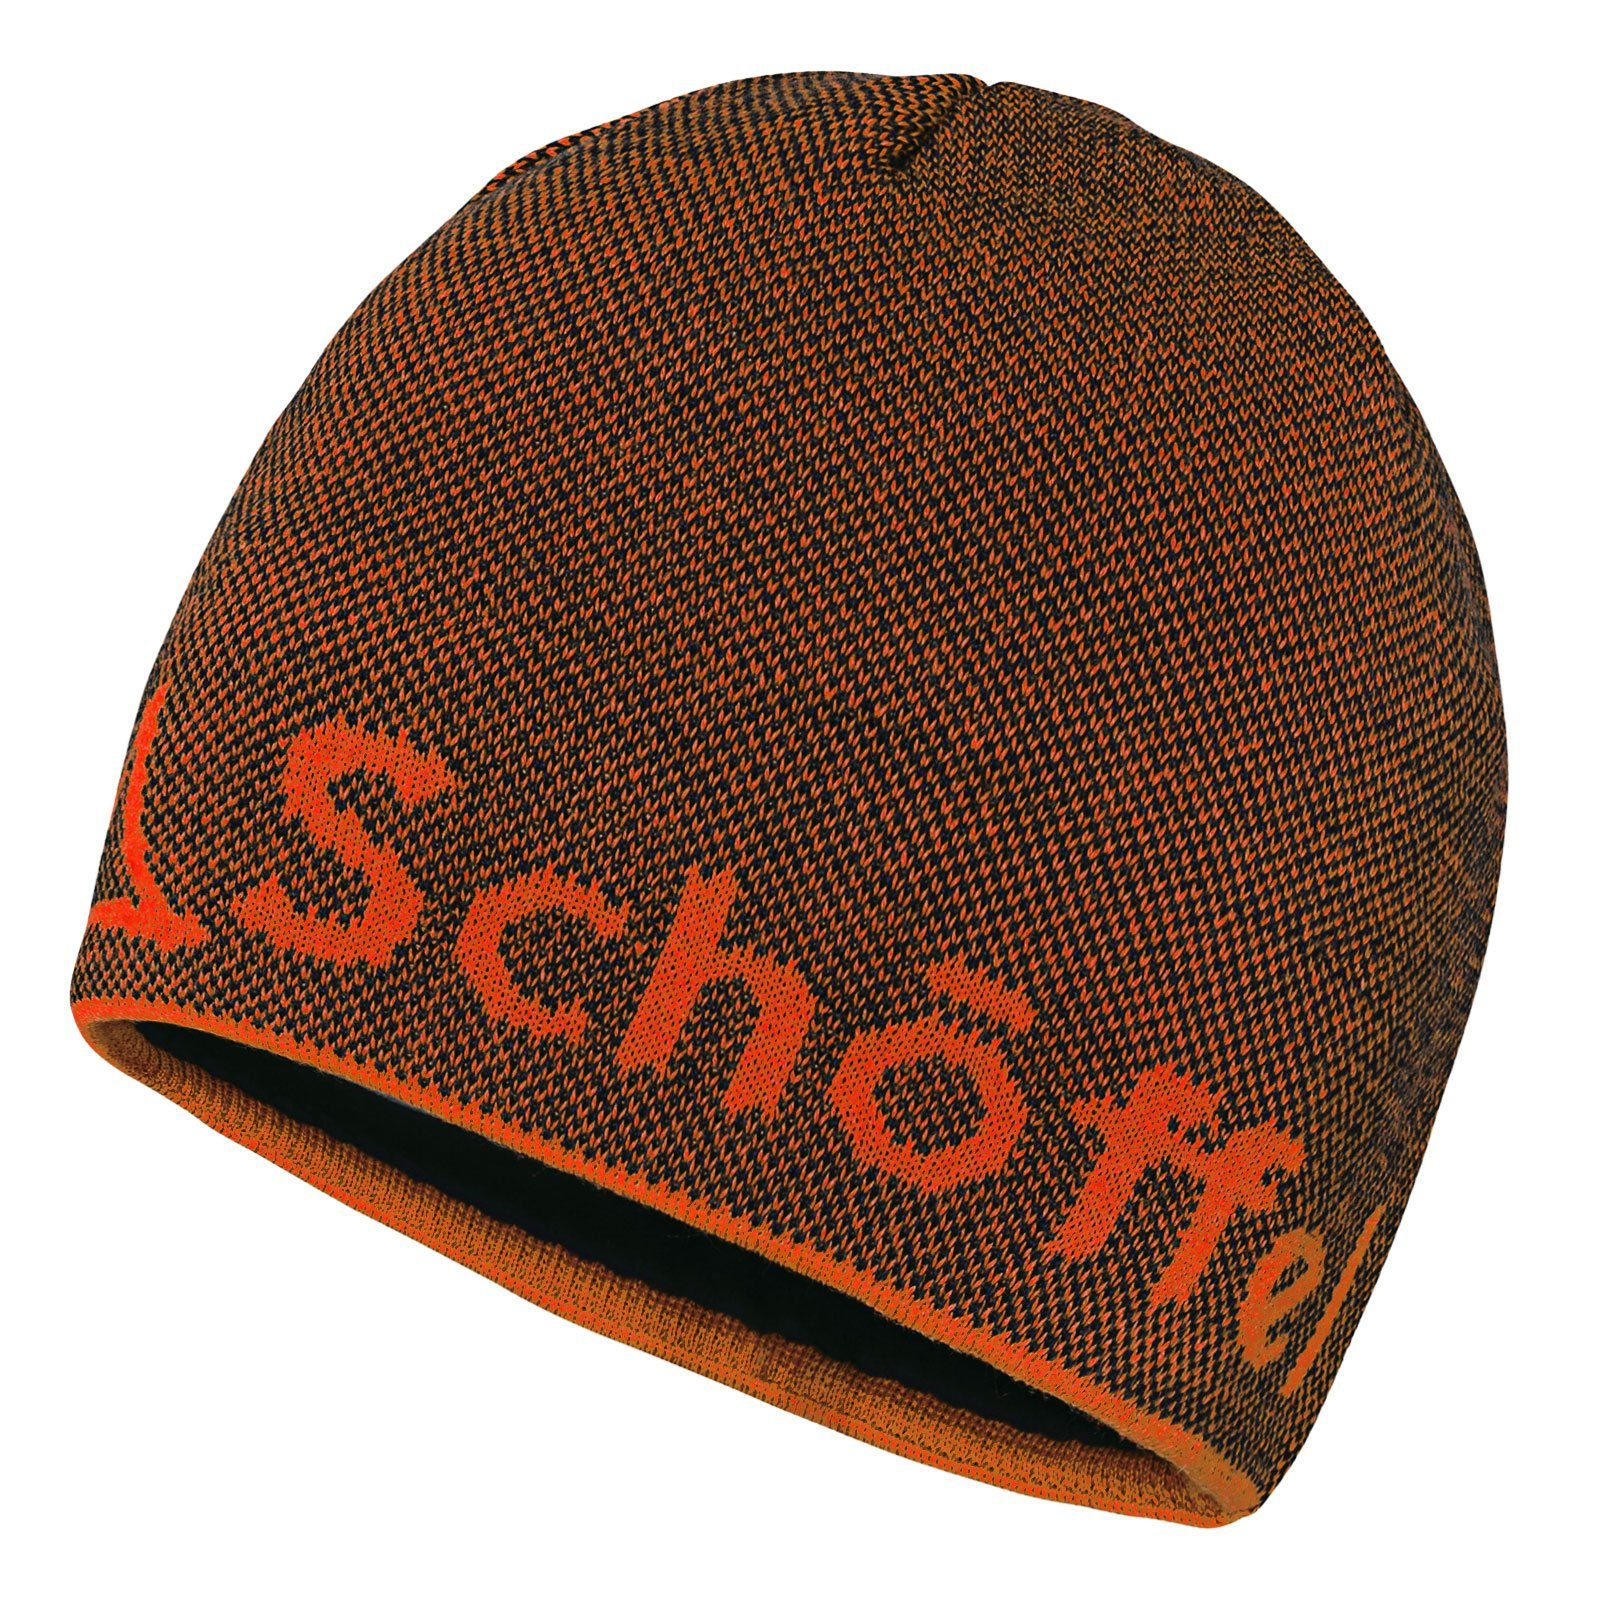 Schöffel Strickmütze Knitted Hat Klinovec mit eingestricktem Schöffel-Logo